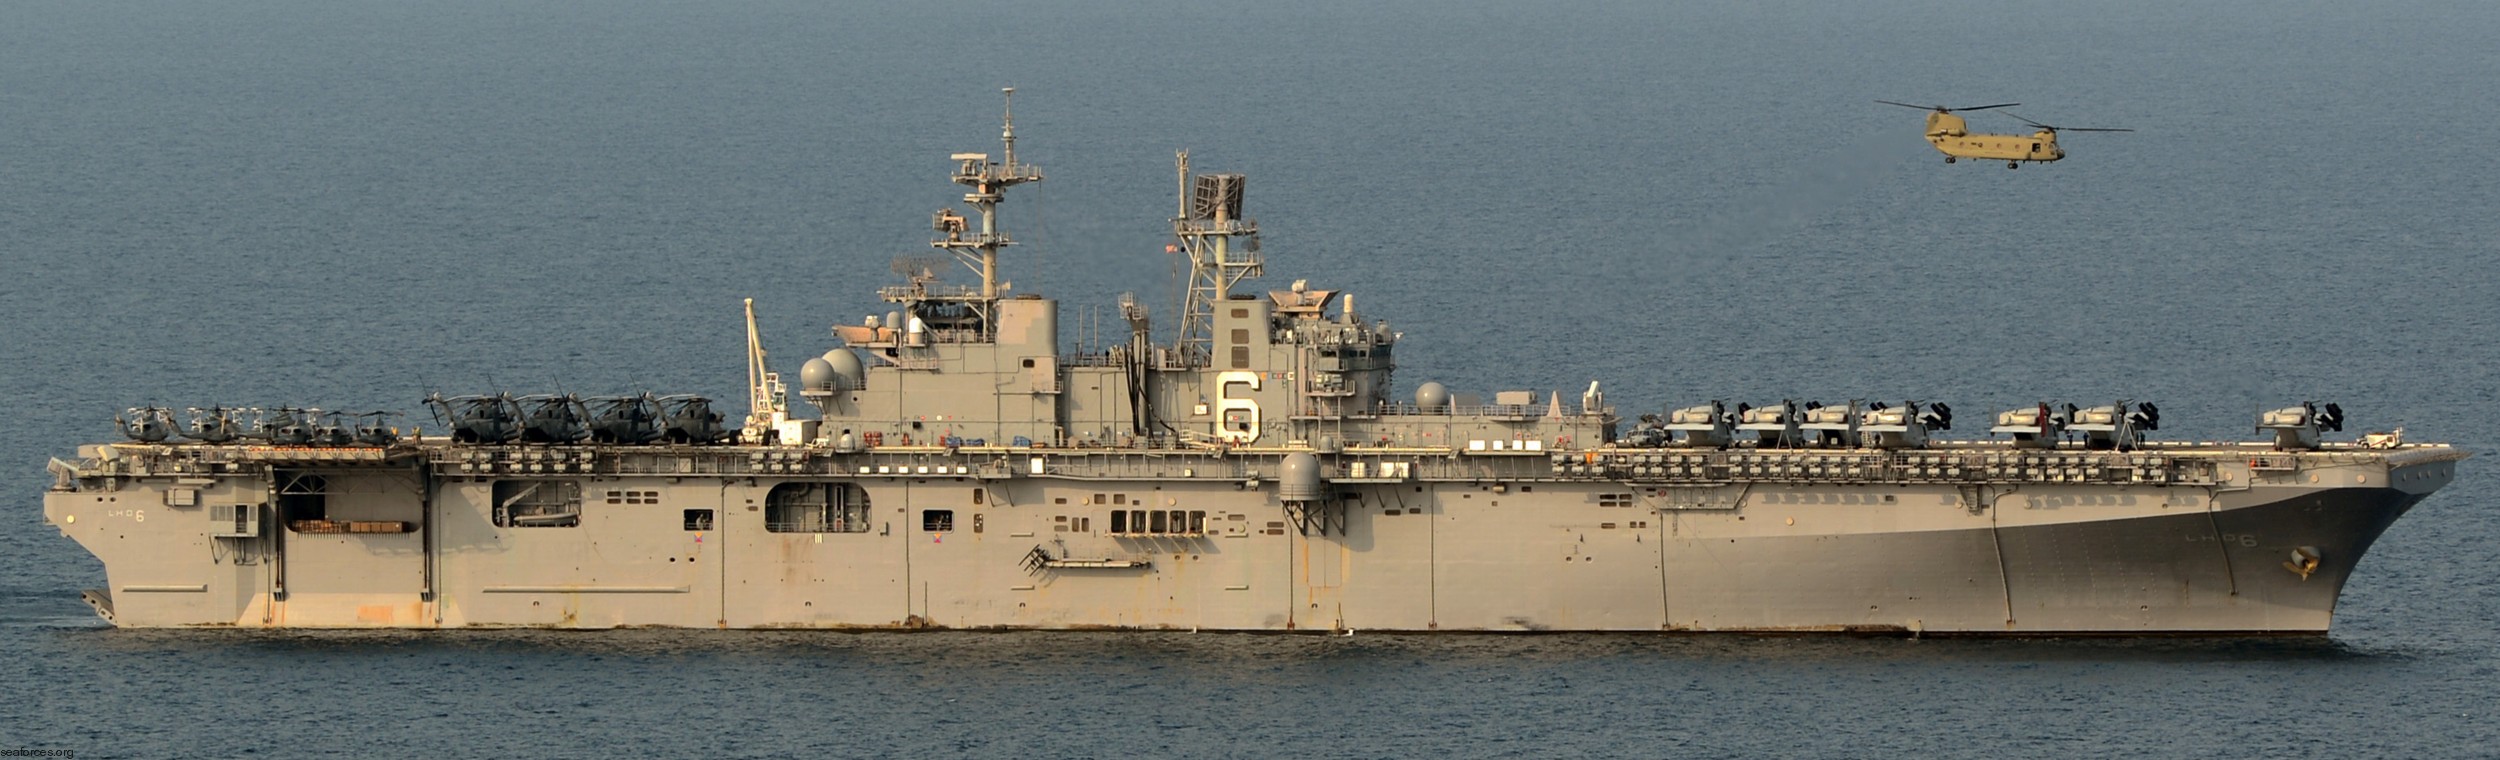 lhd-6 uss bonhomme richard amphibious assault ship landing helicopter dock wasp class 162